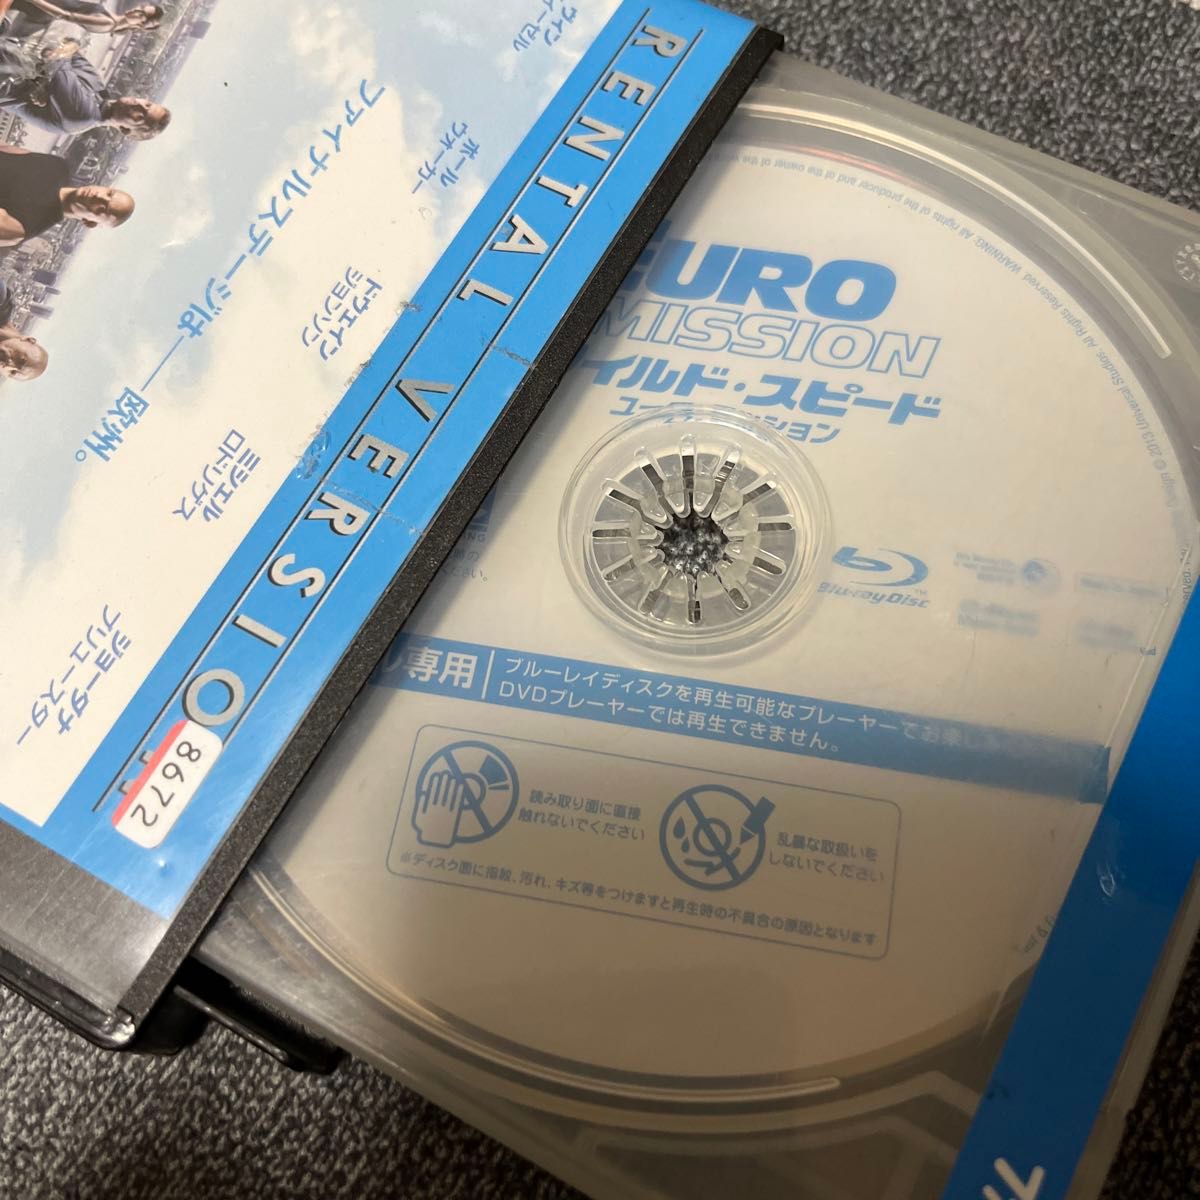 ワイルド・スピード ユーロ・ミッション('13米) DVD BD レンタル落ち